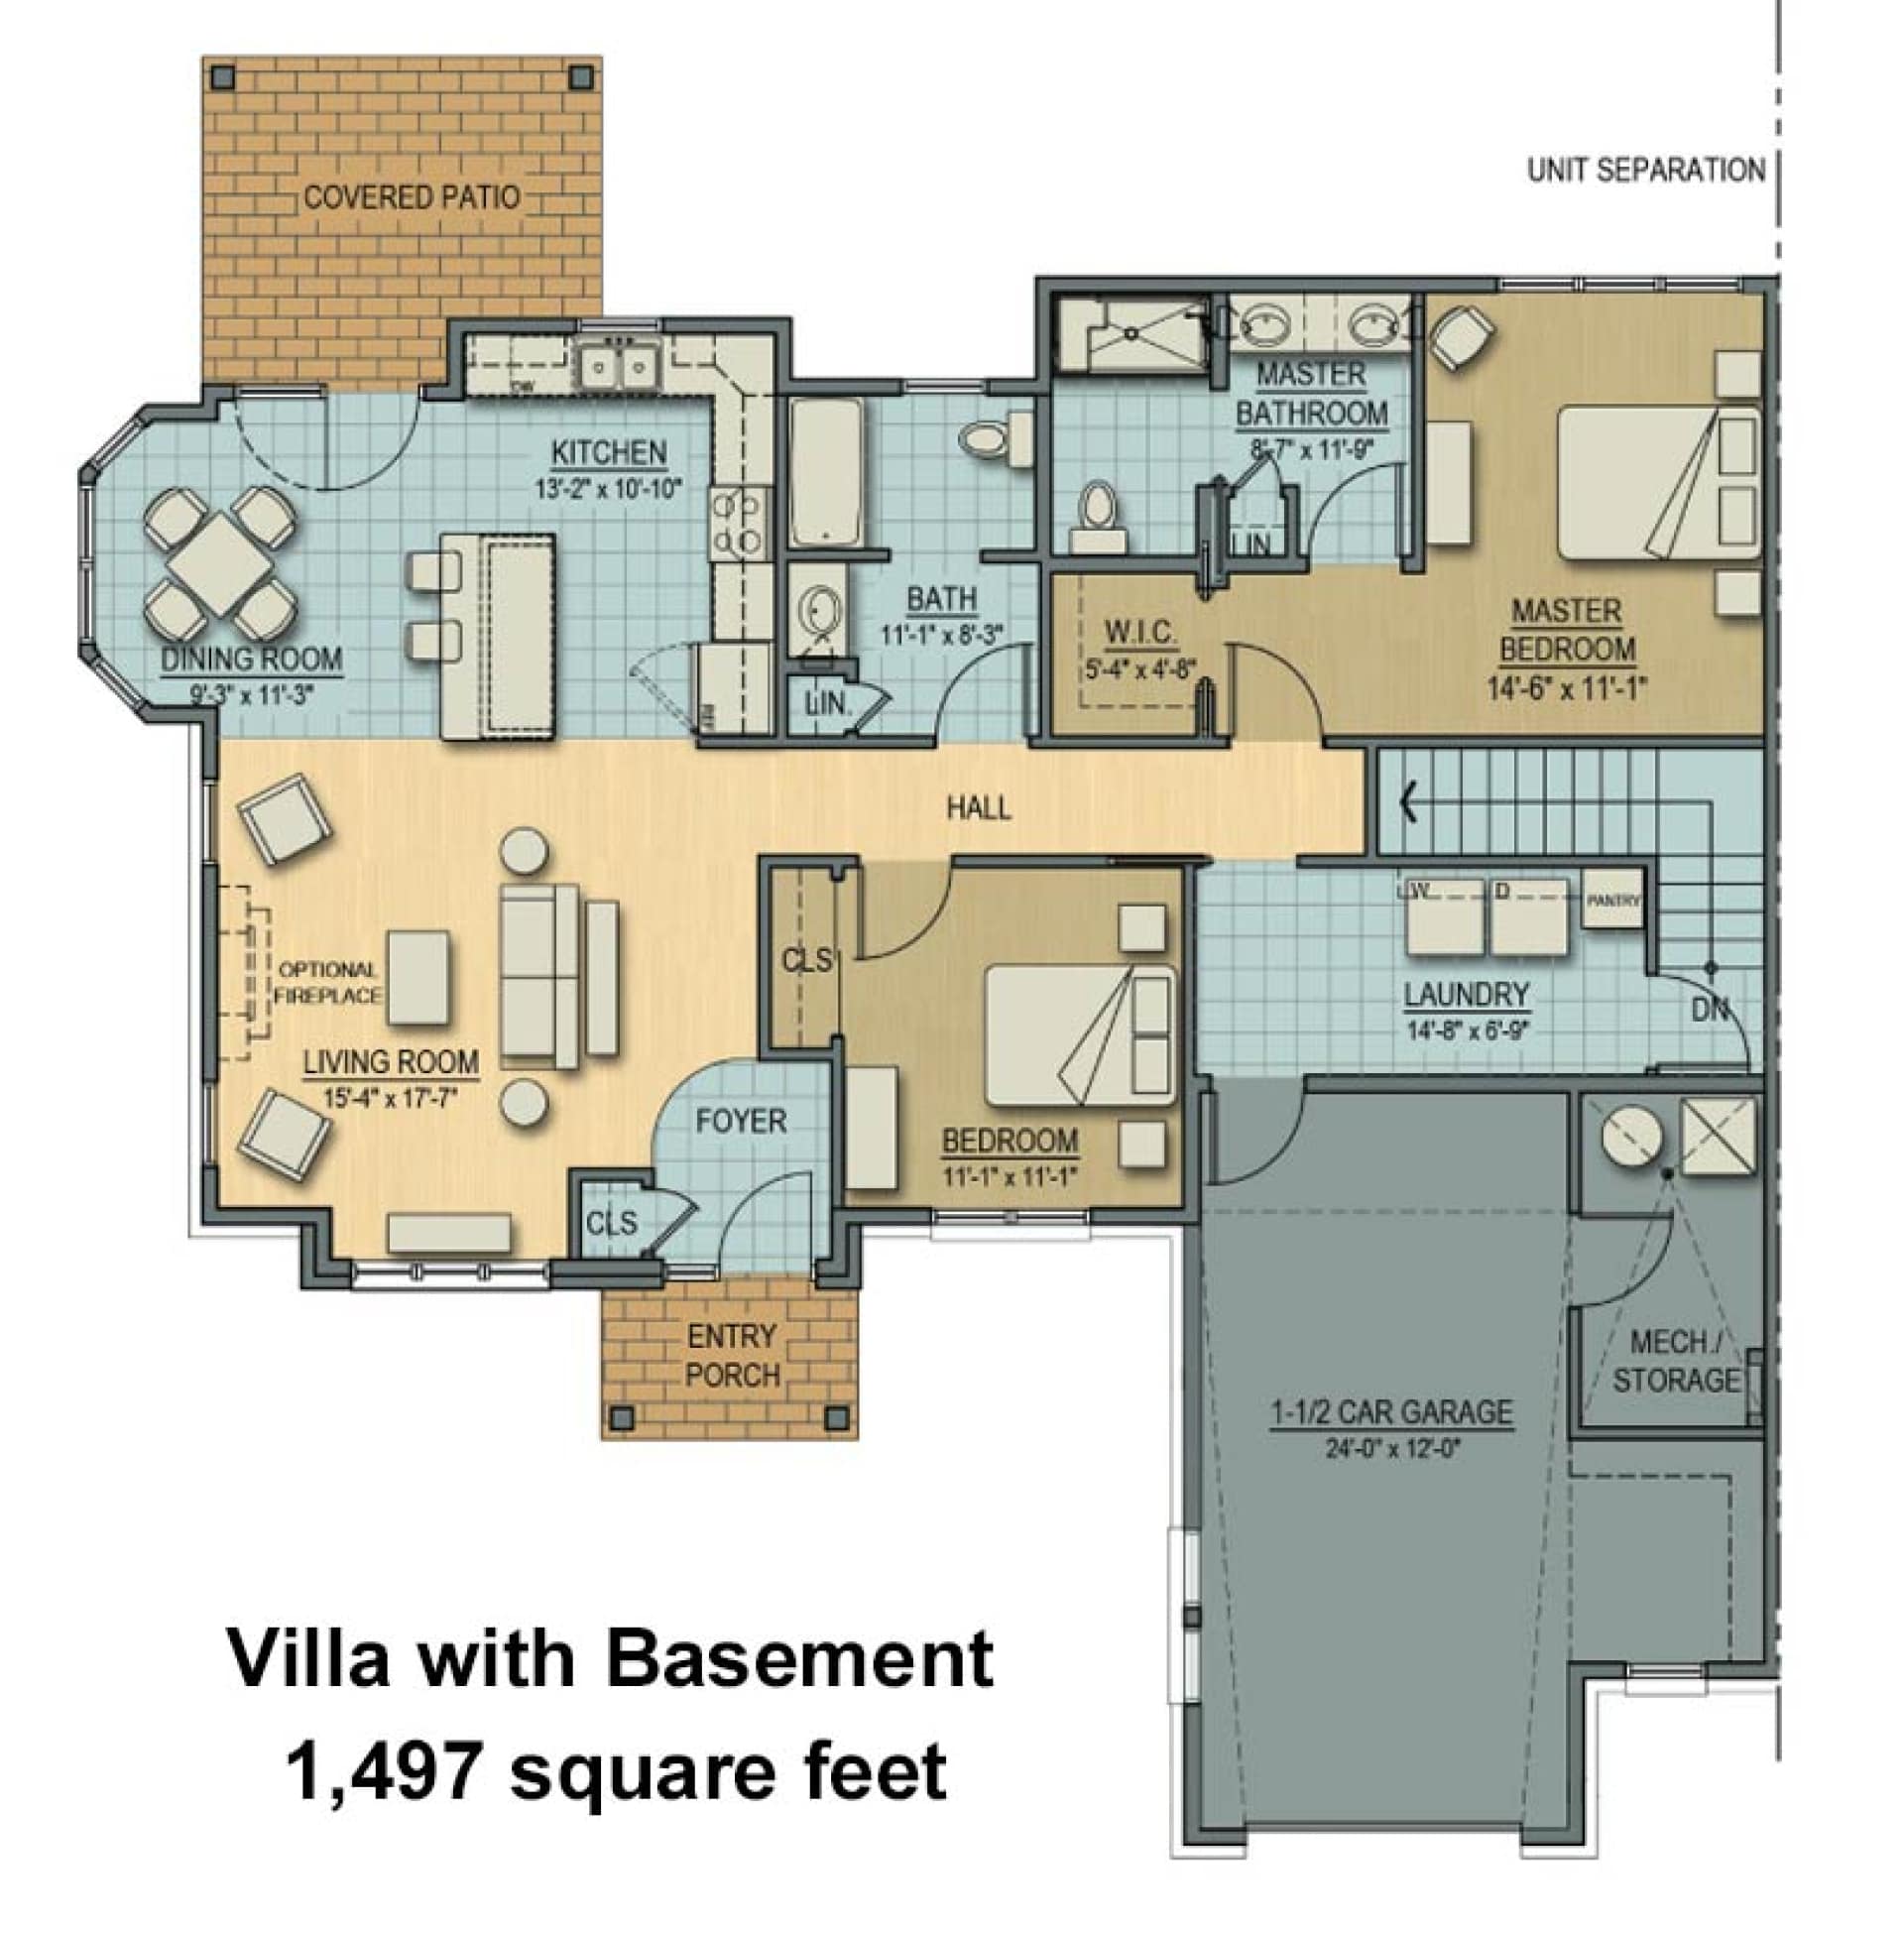 floorplan of village duplex with basement